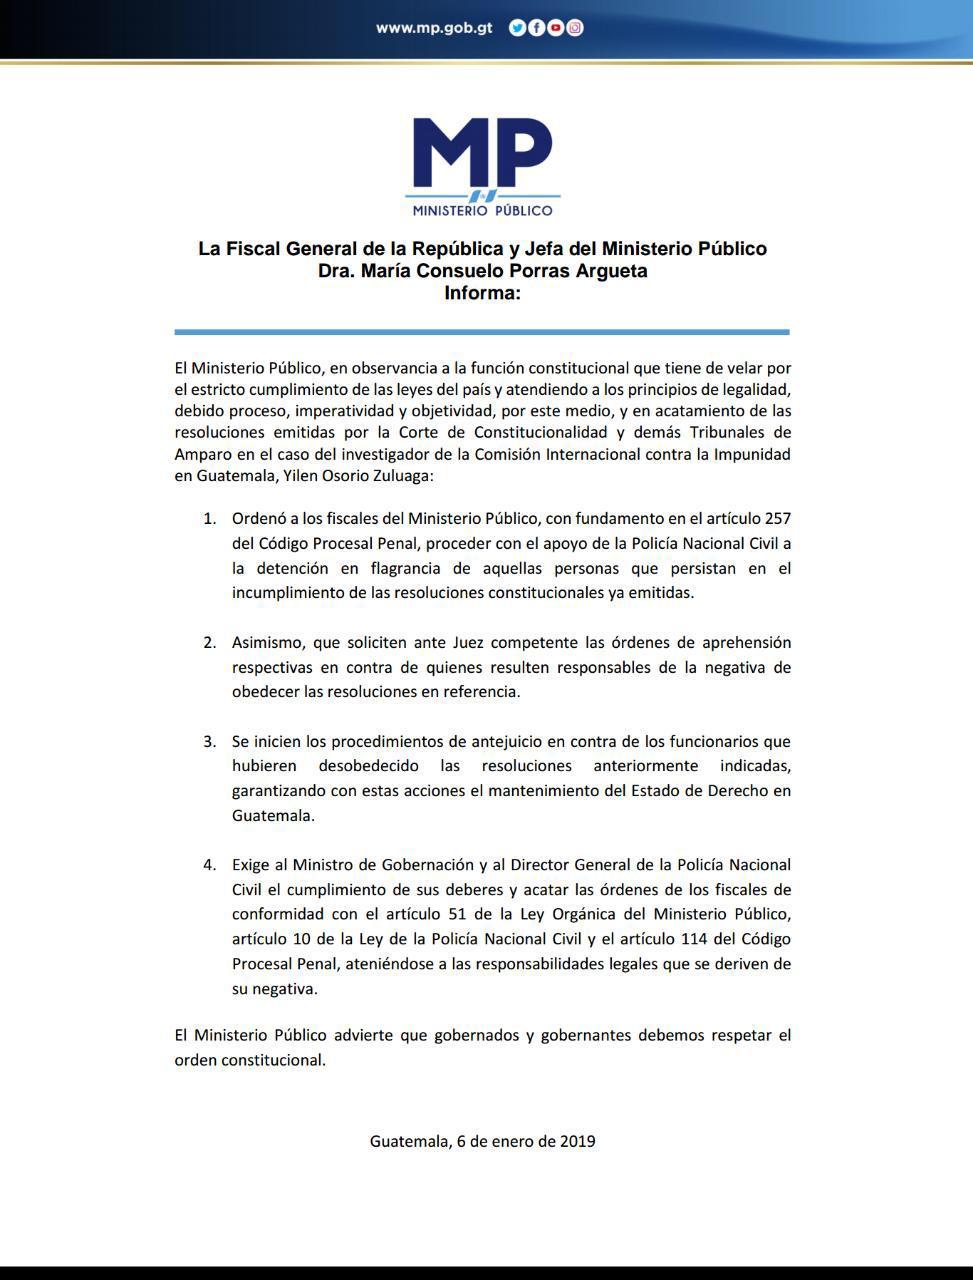 Comunicado del MP de Guatemala, del 6 de enero de 2019.